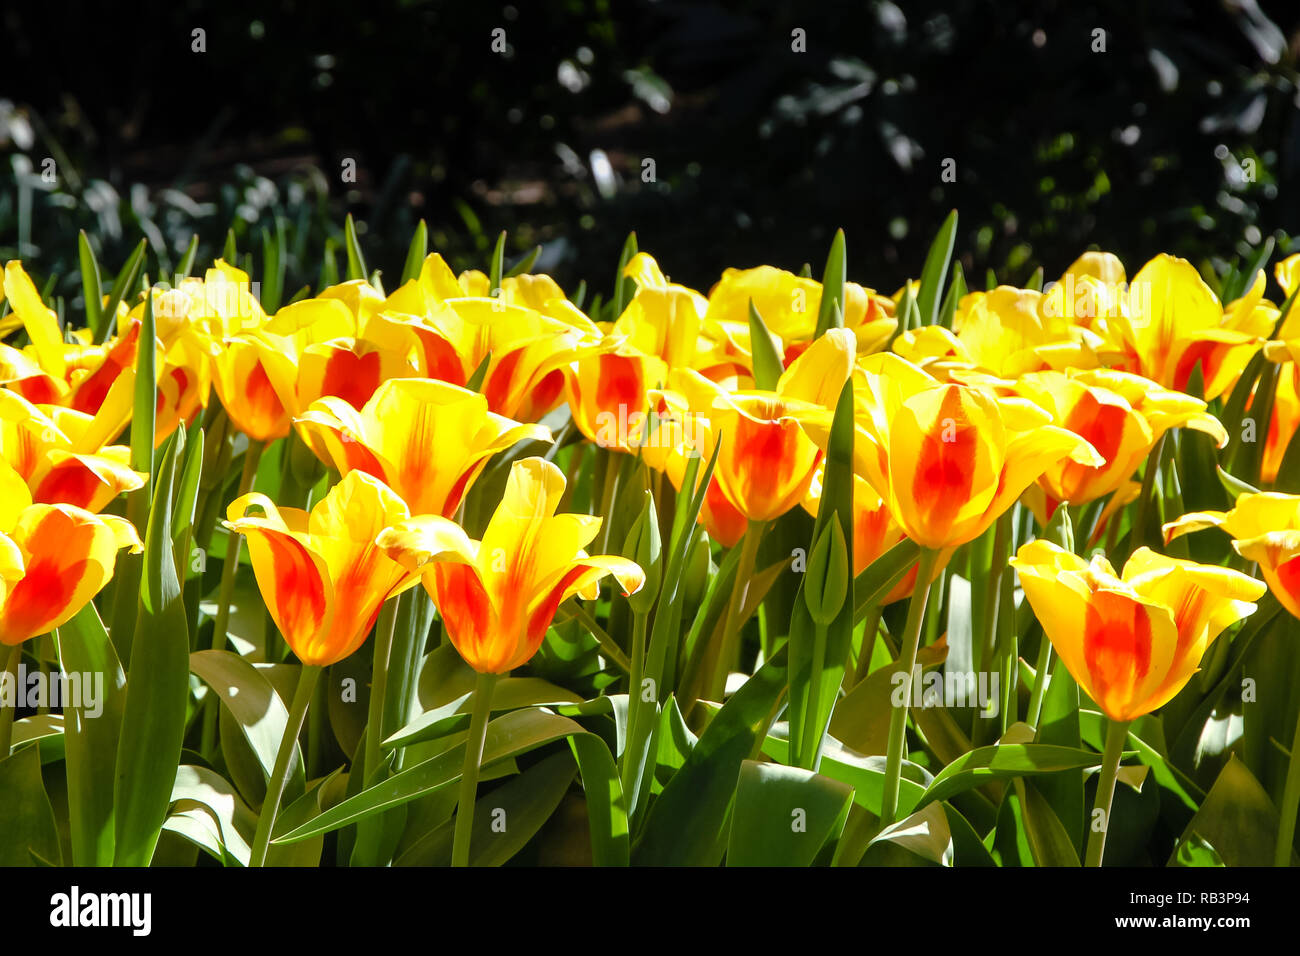 La molla di colore giallo e rosso tulipani che fiorisce con peduncolo verde contro uno sfondo scuro su una soleggiata giornata all'aperto. Concetto di immagine per le stagioni primavera ed estate, Foto Stock